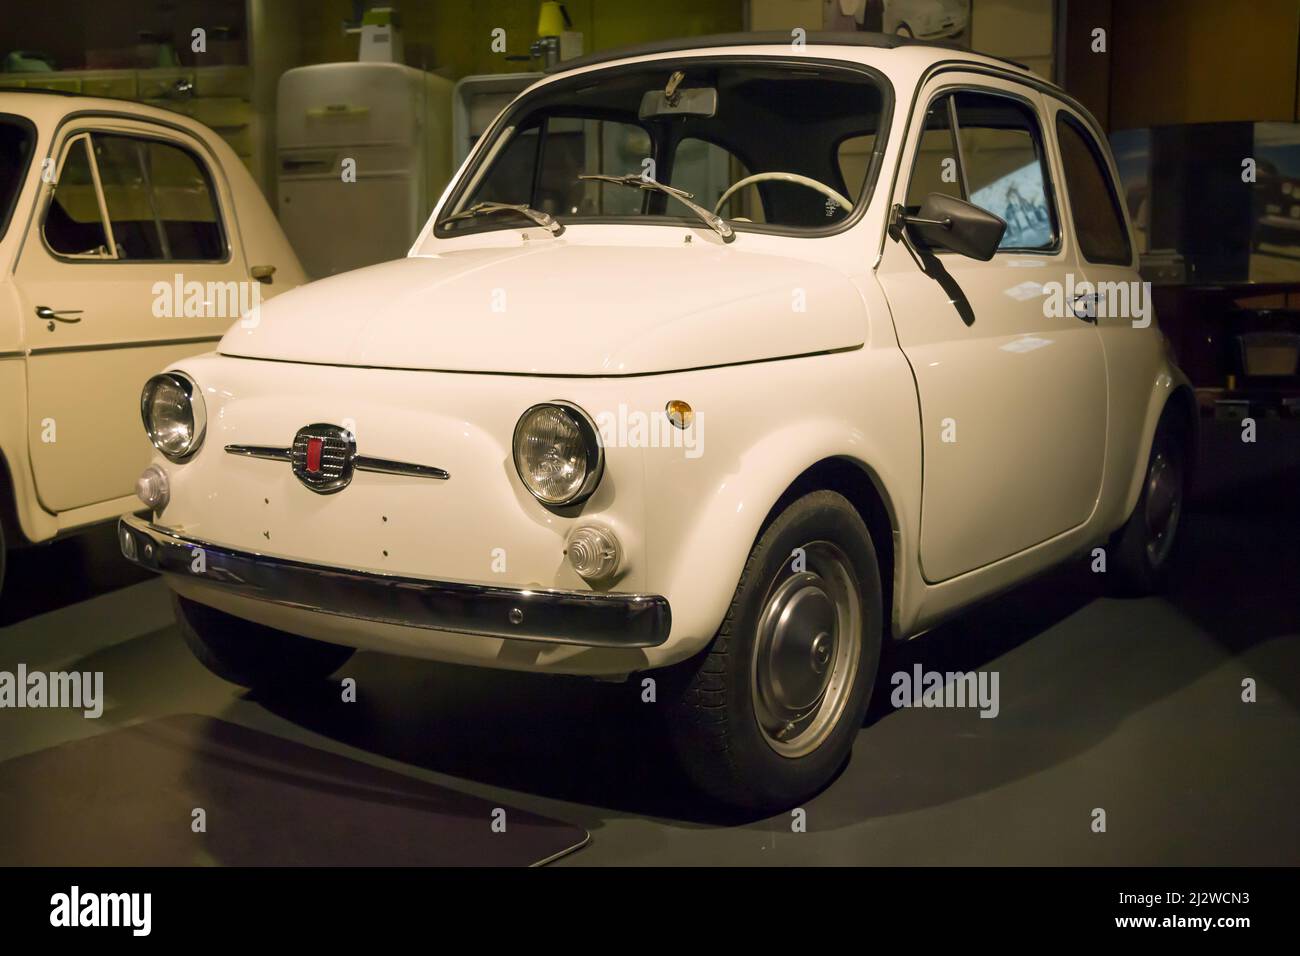 Turin, Italie - 14 août 2021: 1968 Fiat 500 F présentée au Musée national de l'automobile (MAUTO) à Turin, Italie. Banque D'Images